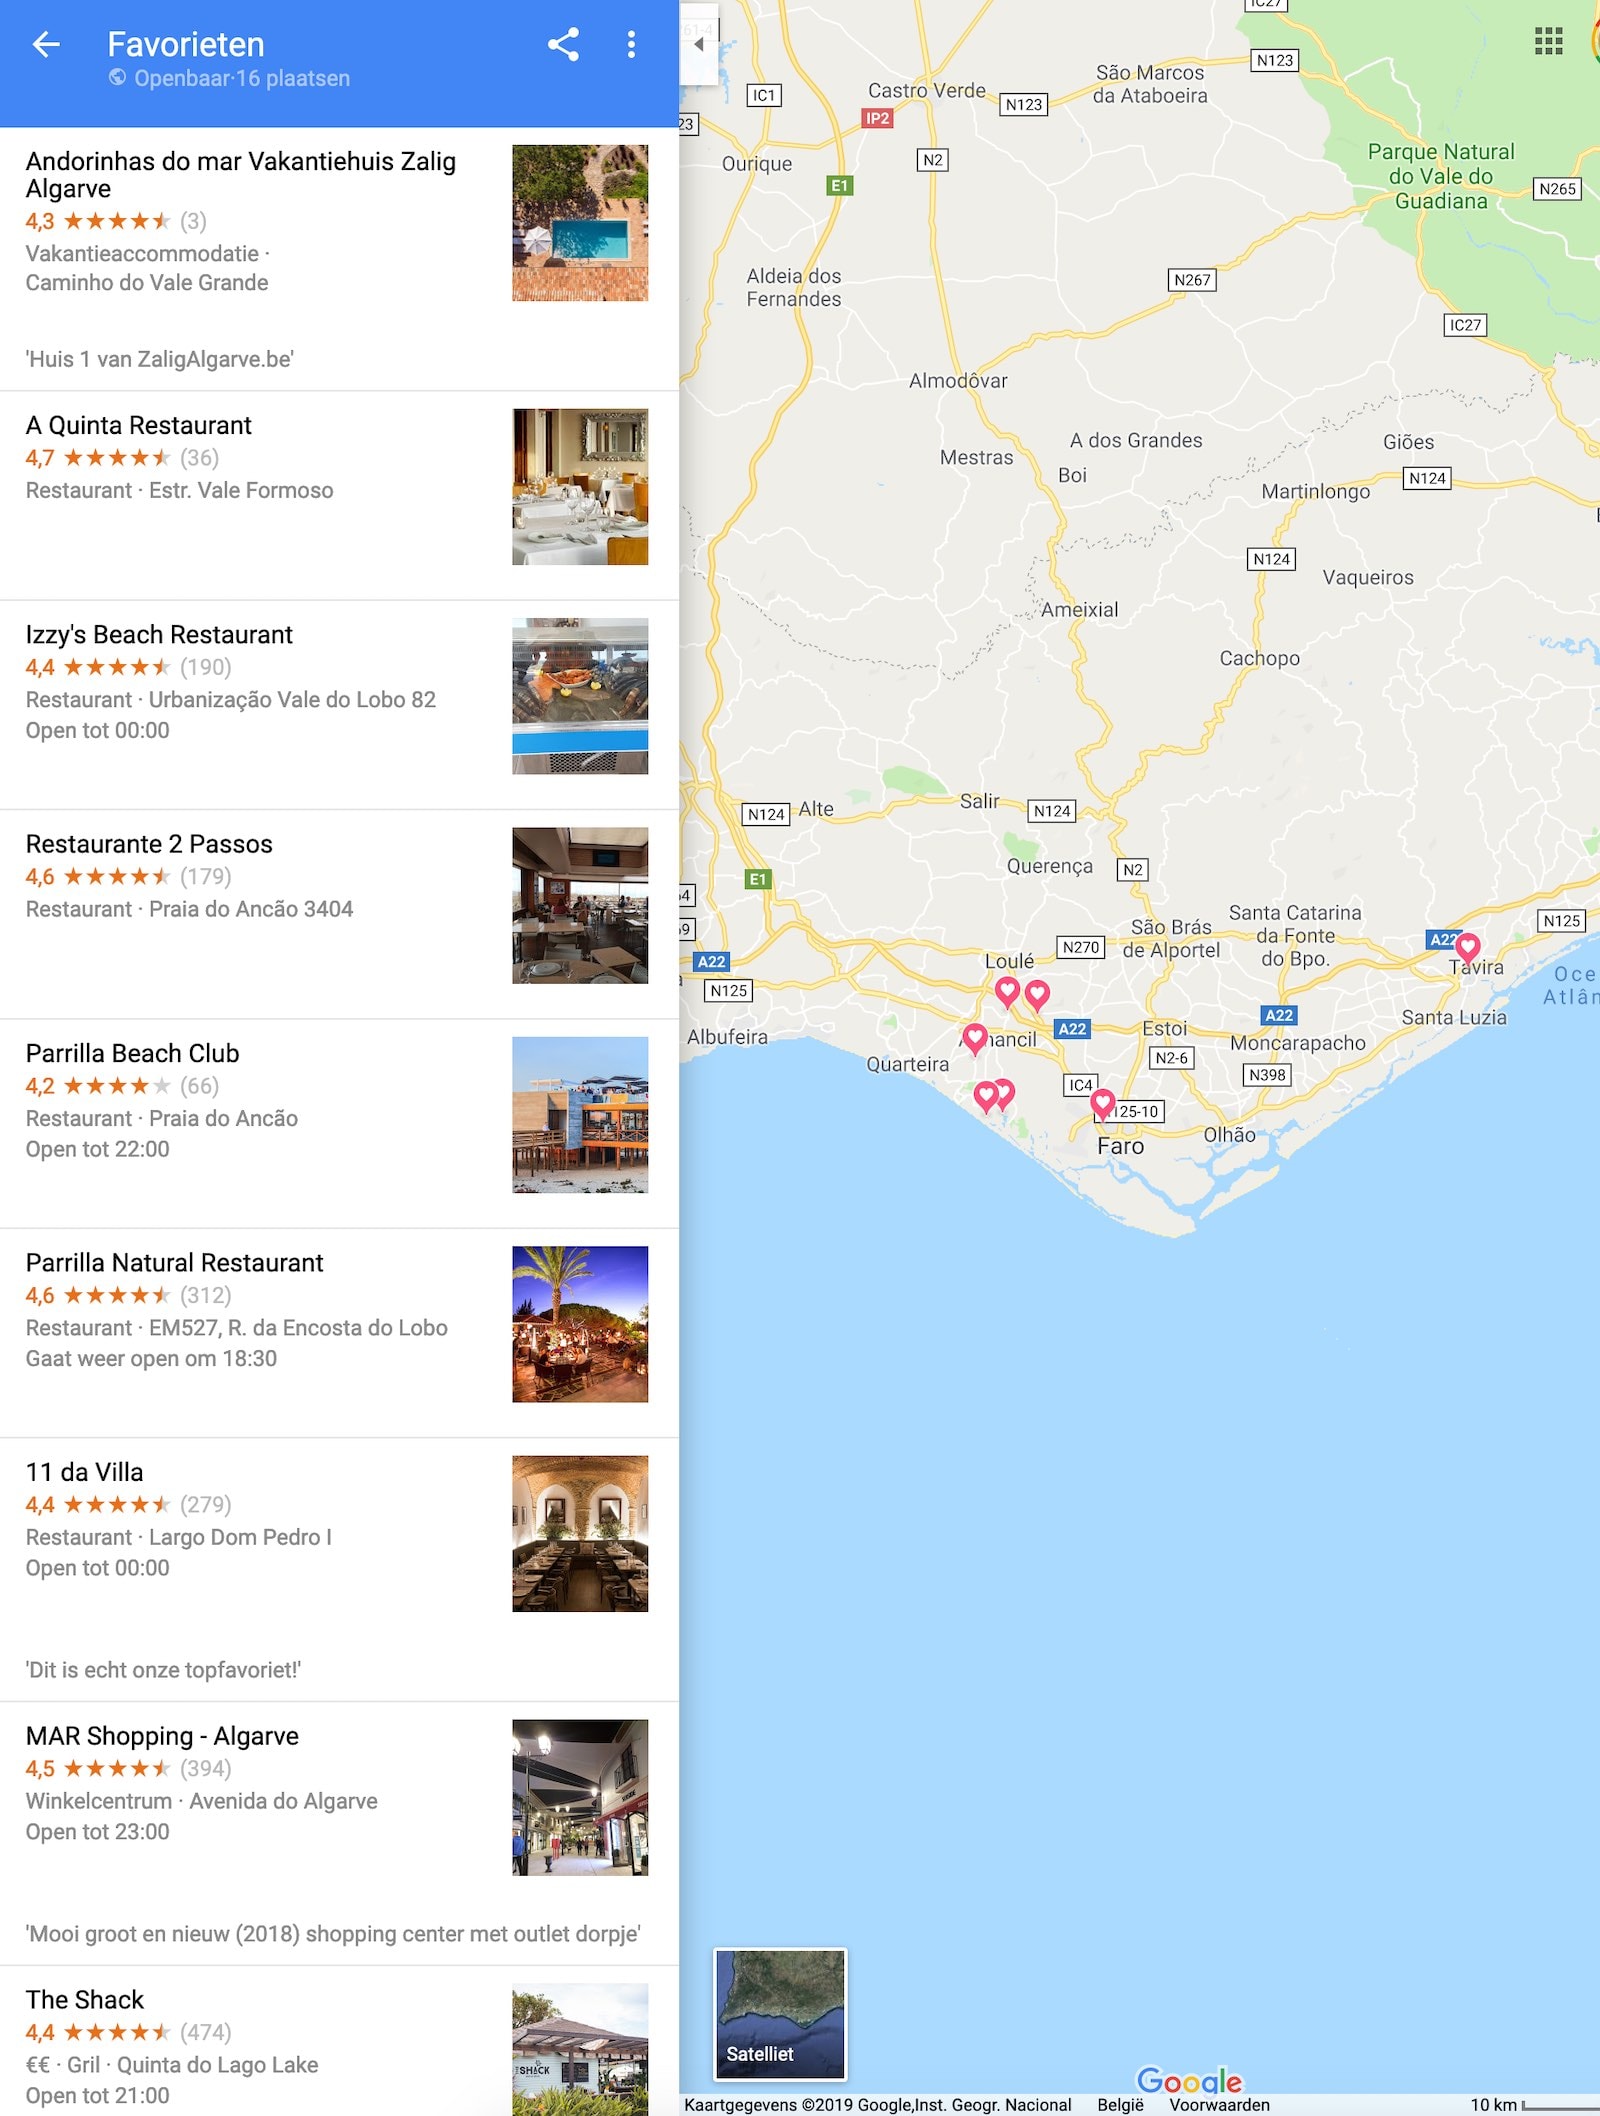 Google maps restaurants in Algarve